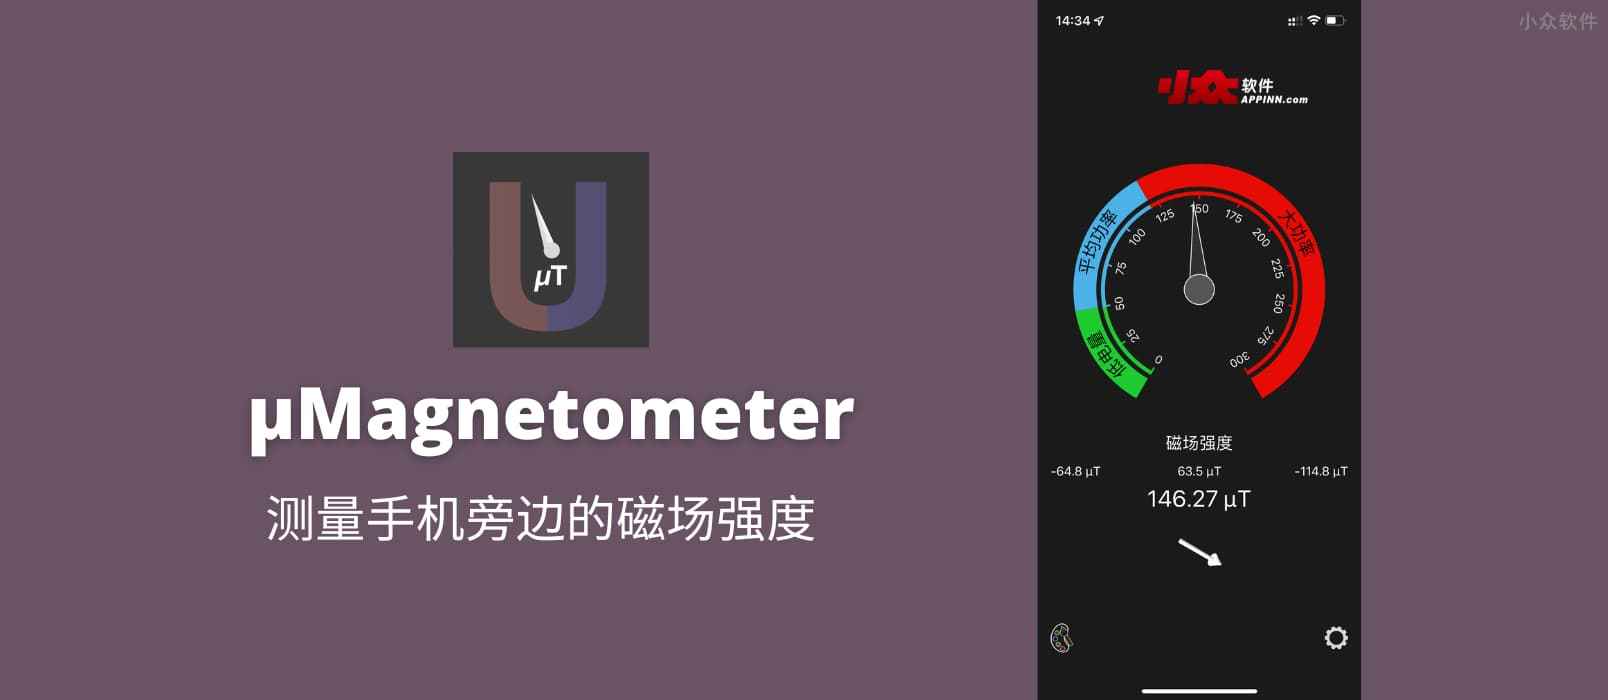 µMagnetometer - 磁力计，测量手机旁边的磁场强度[iPhone]